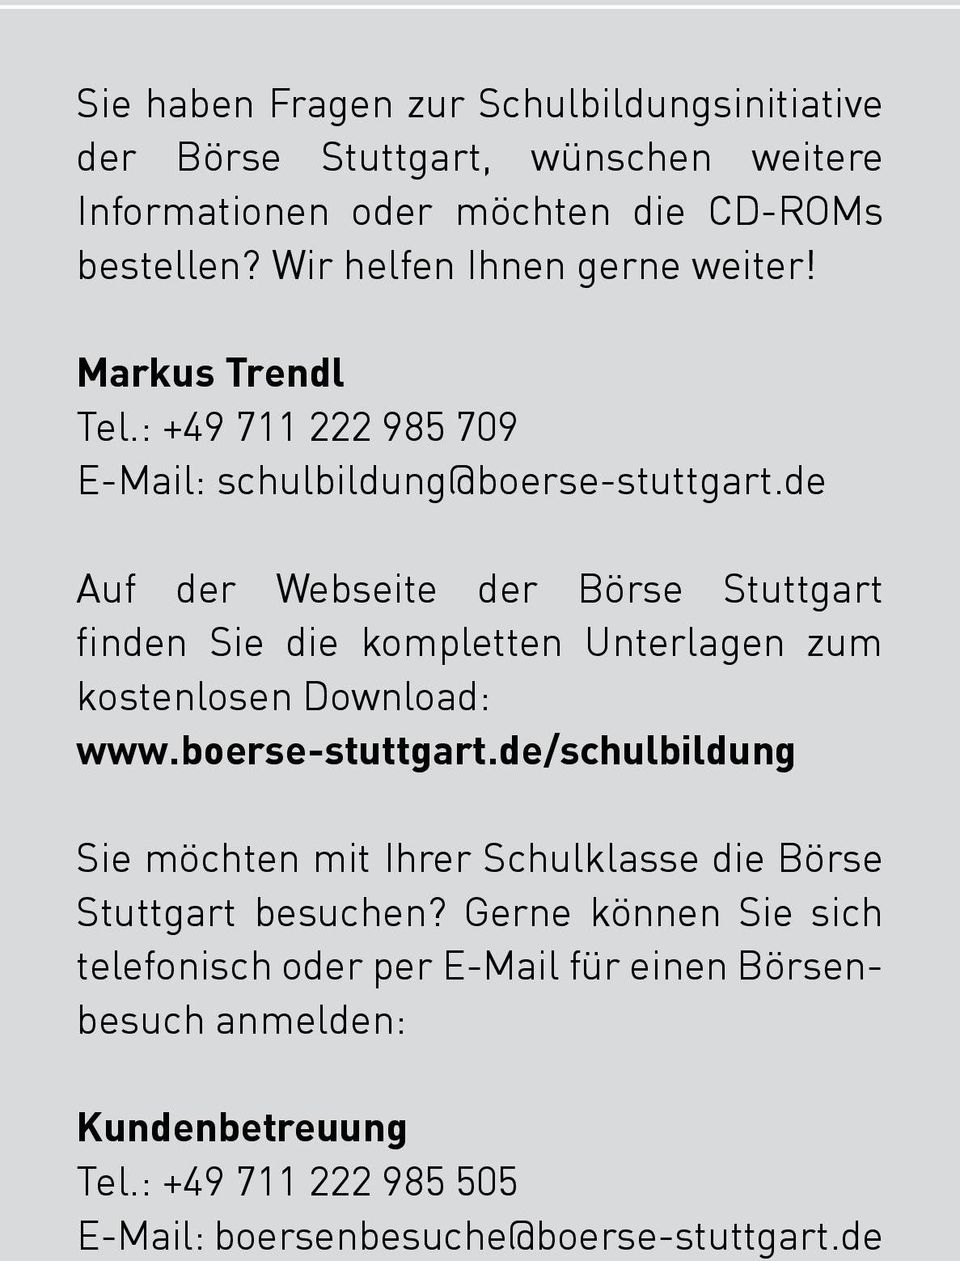 de Auf der Webseite der Börse Stuttgart finden Sie die kompletten Unterlagen zum kostenlosen Download: www.boerse-stuttgart.